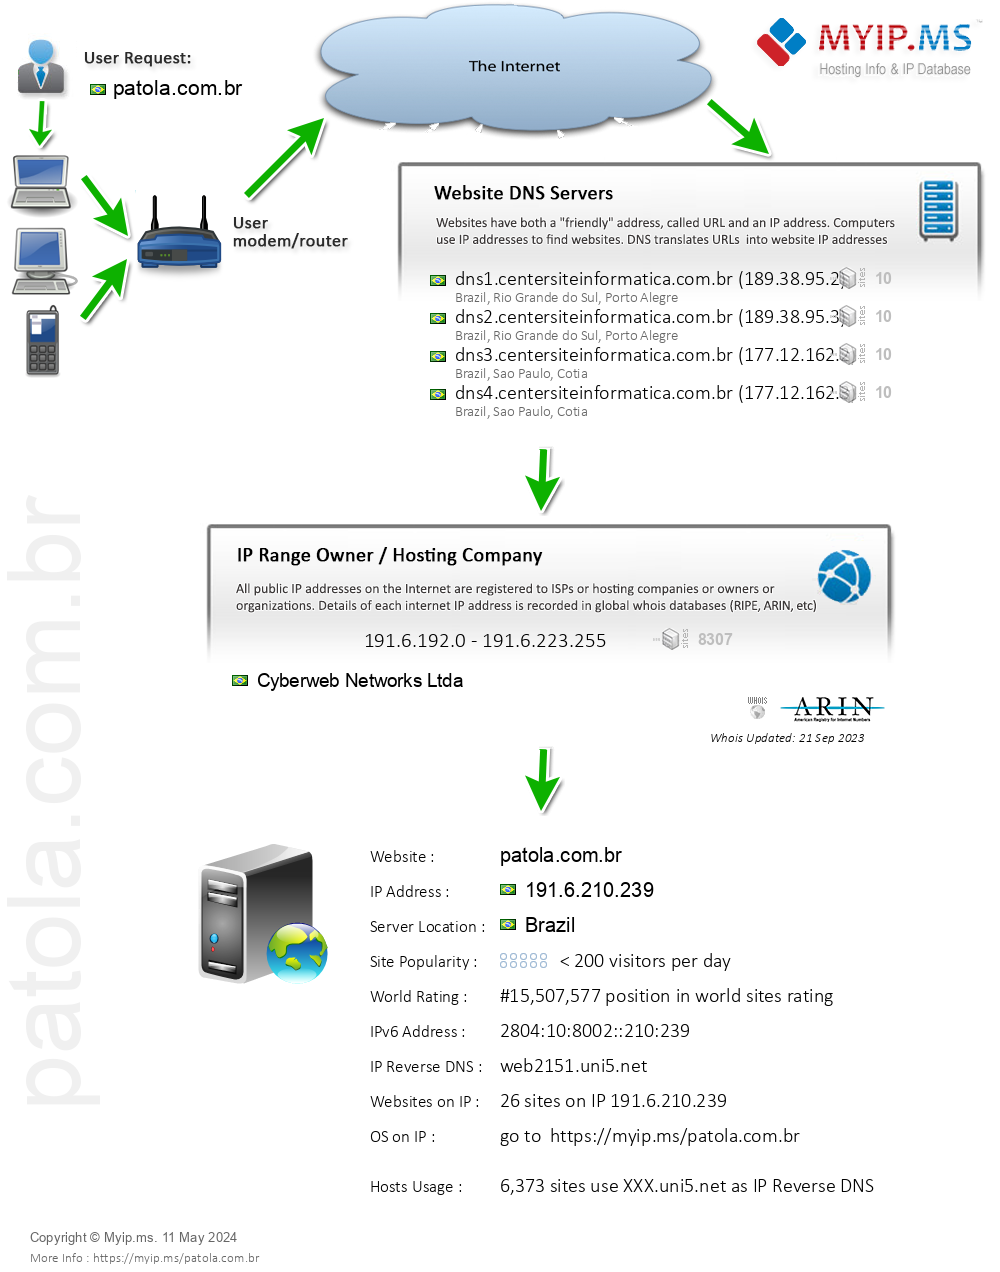 Patola.com.br - Website Hosting Visual IP Diagram